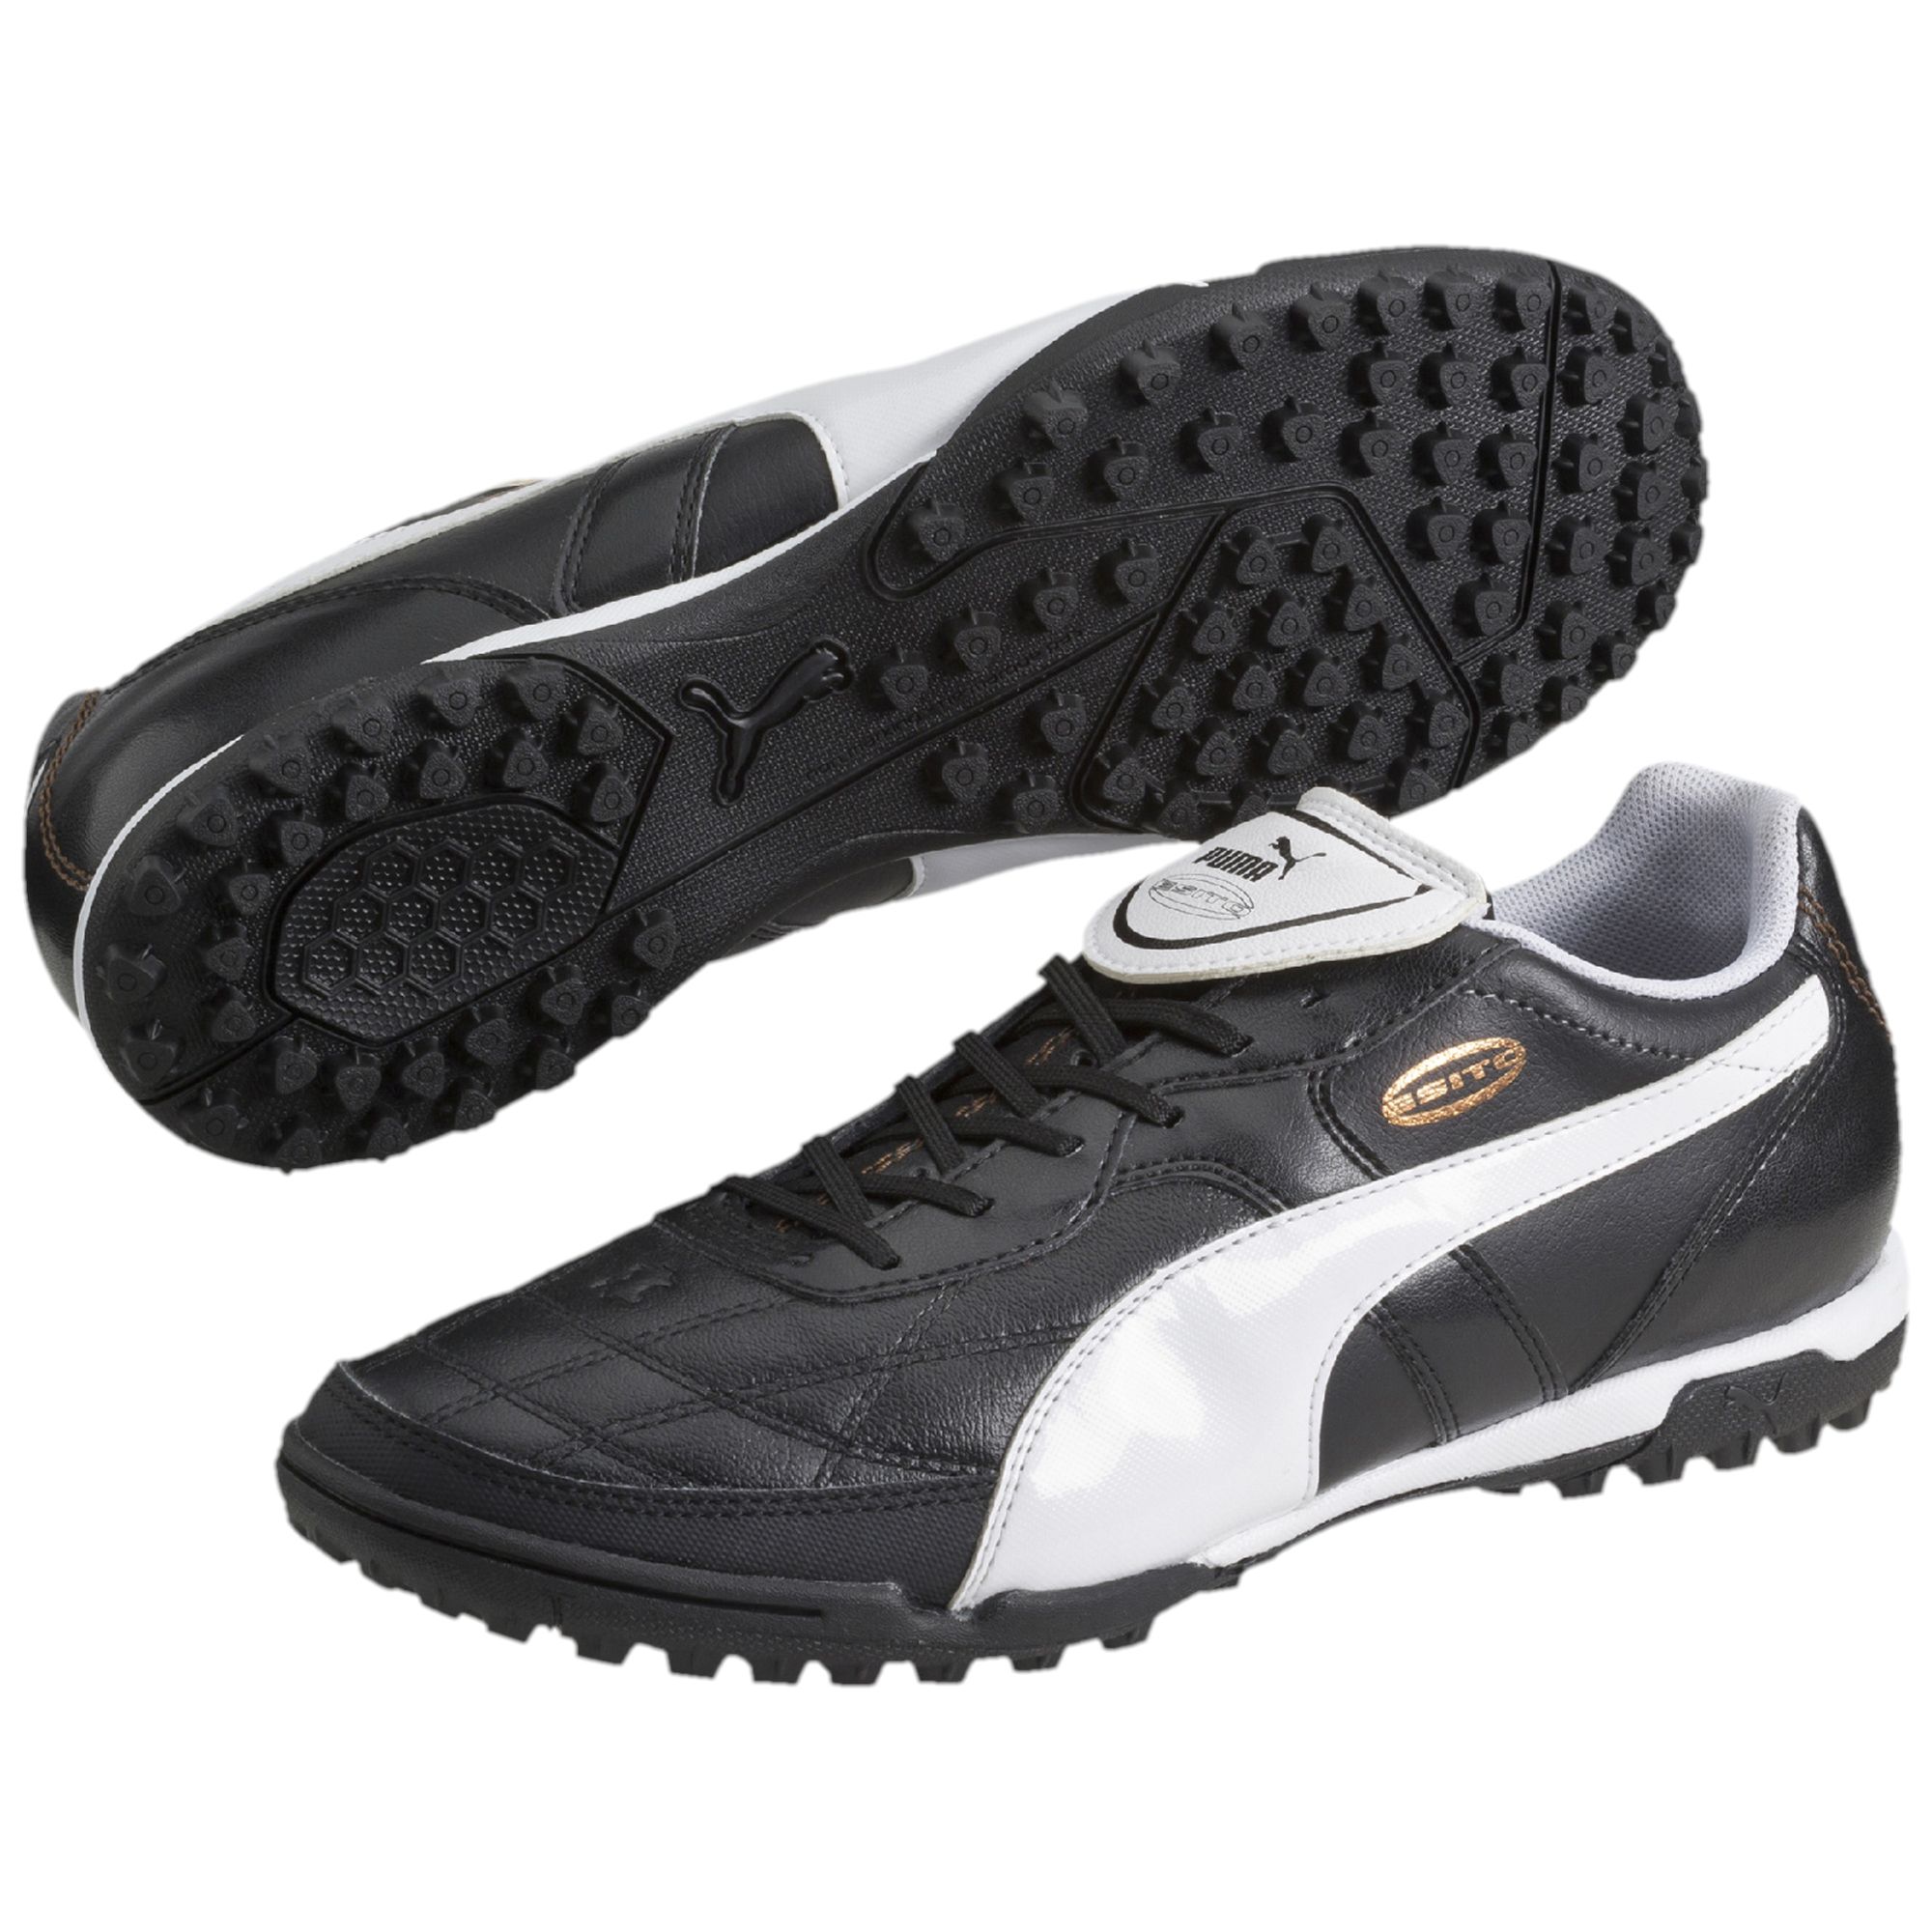 PUMA Esito Classico TT Football Boots Hombre Zapatos Fútbol Nuevo | Compra  online en eBay